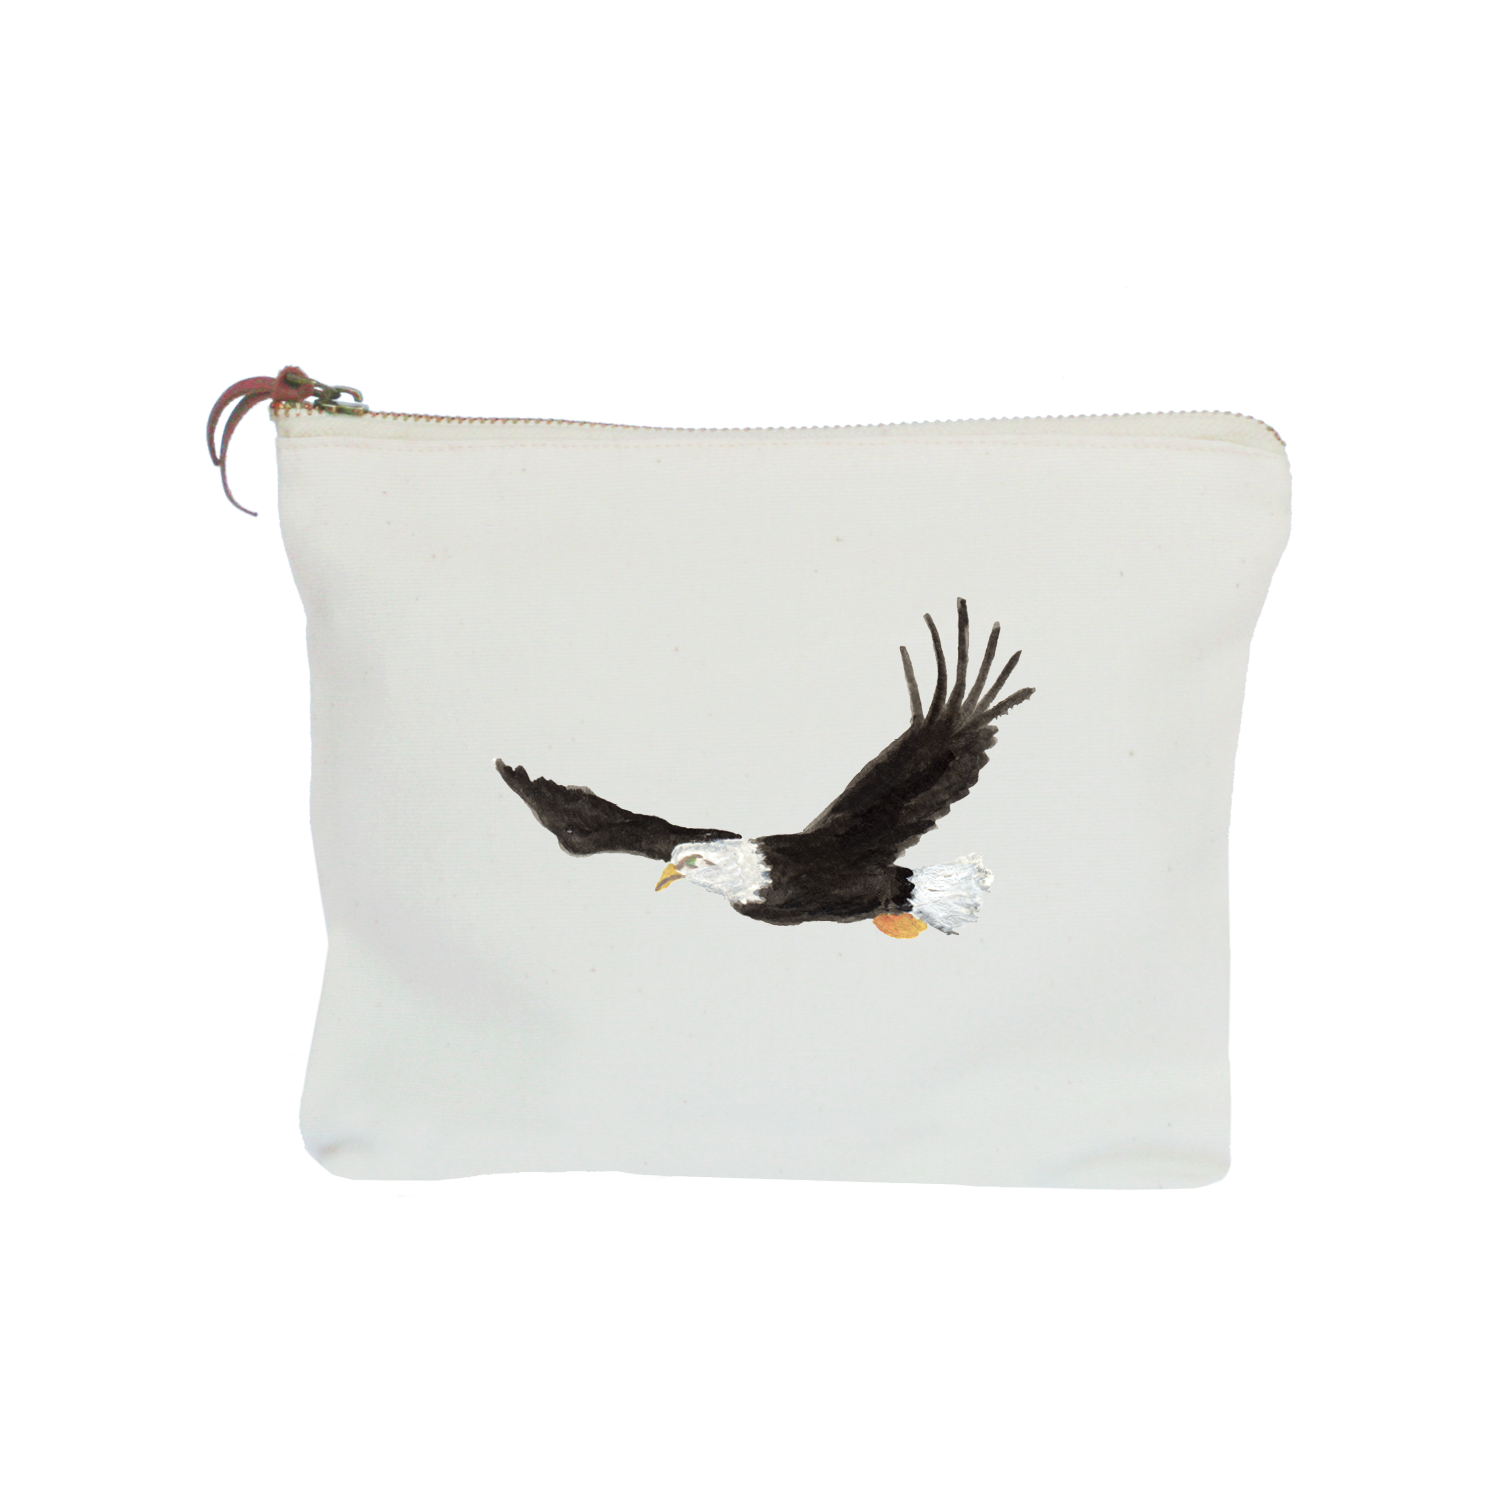 eagle in flight zipper pouch